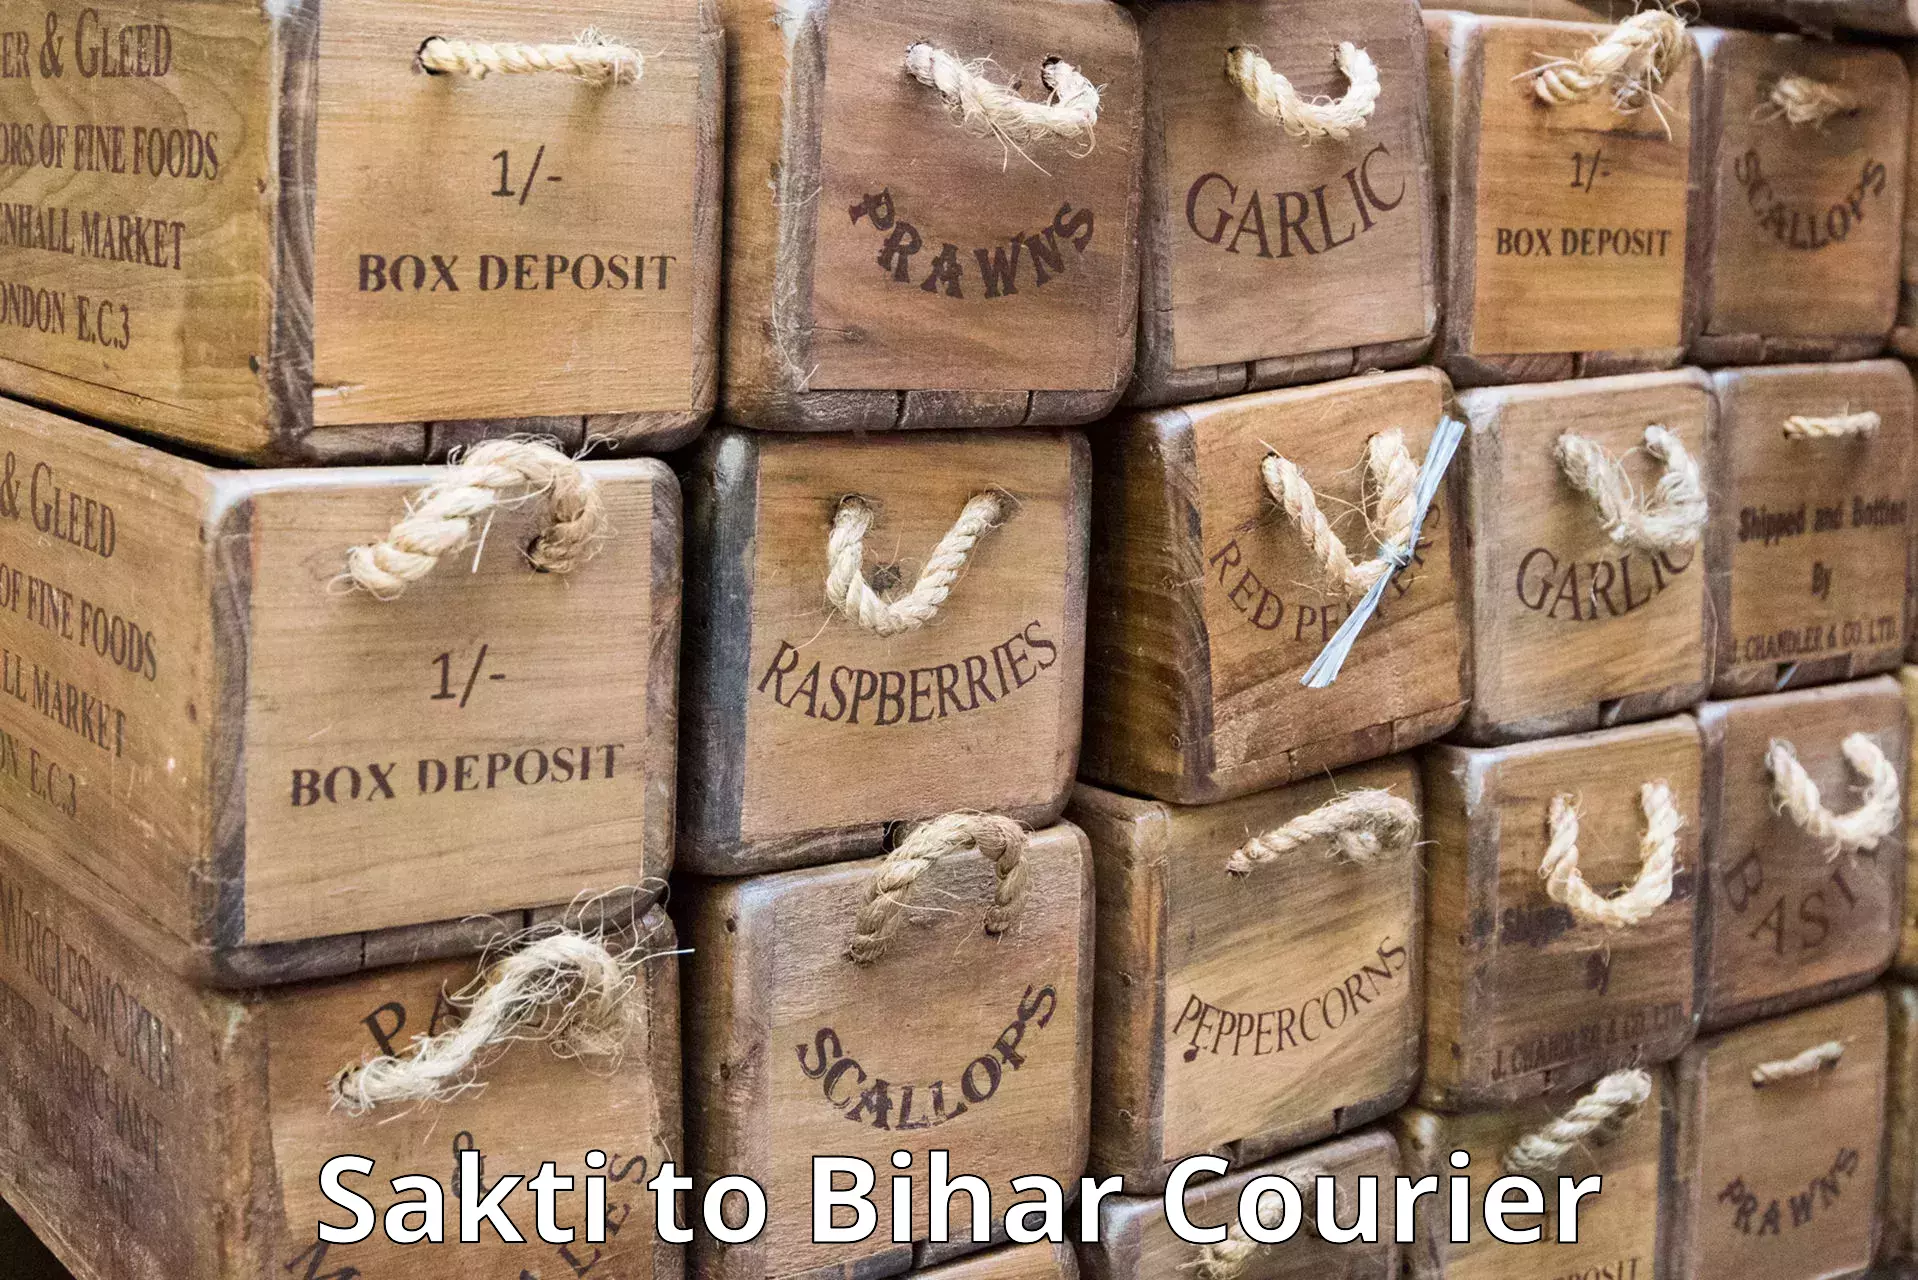 Regular parcel service Sakti to Buxar